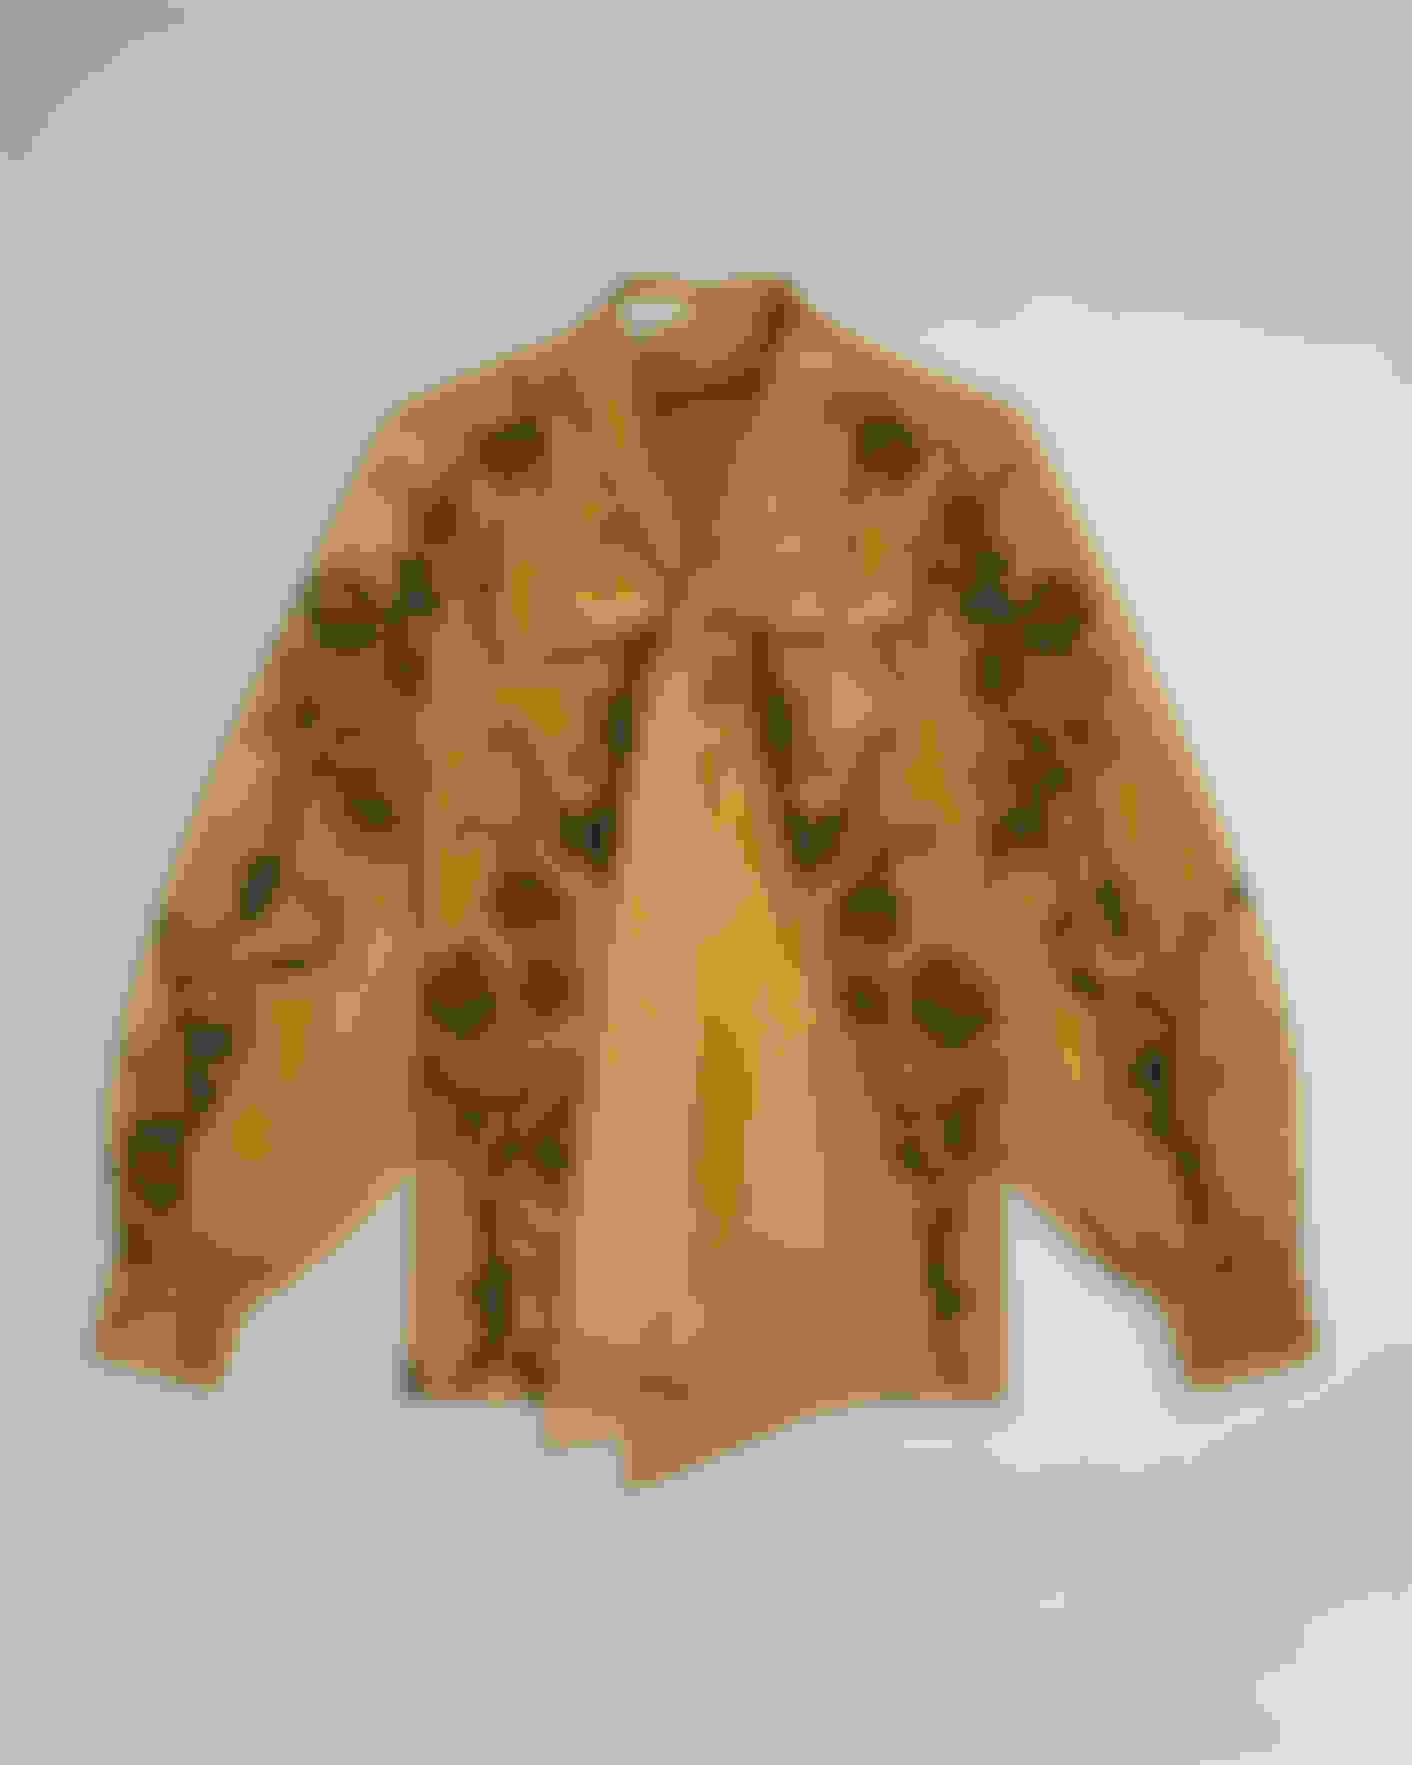 Louis Vuitton Monogram Camo Mink Fur Jacket